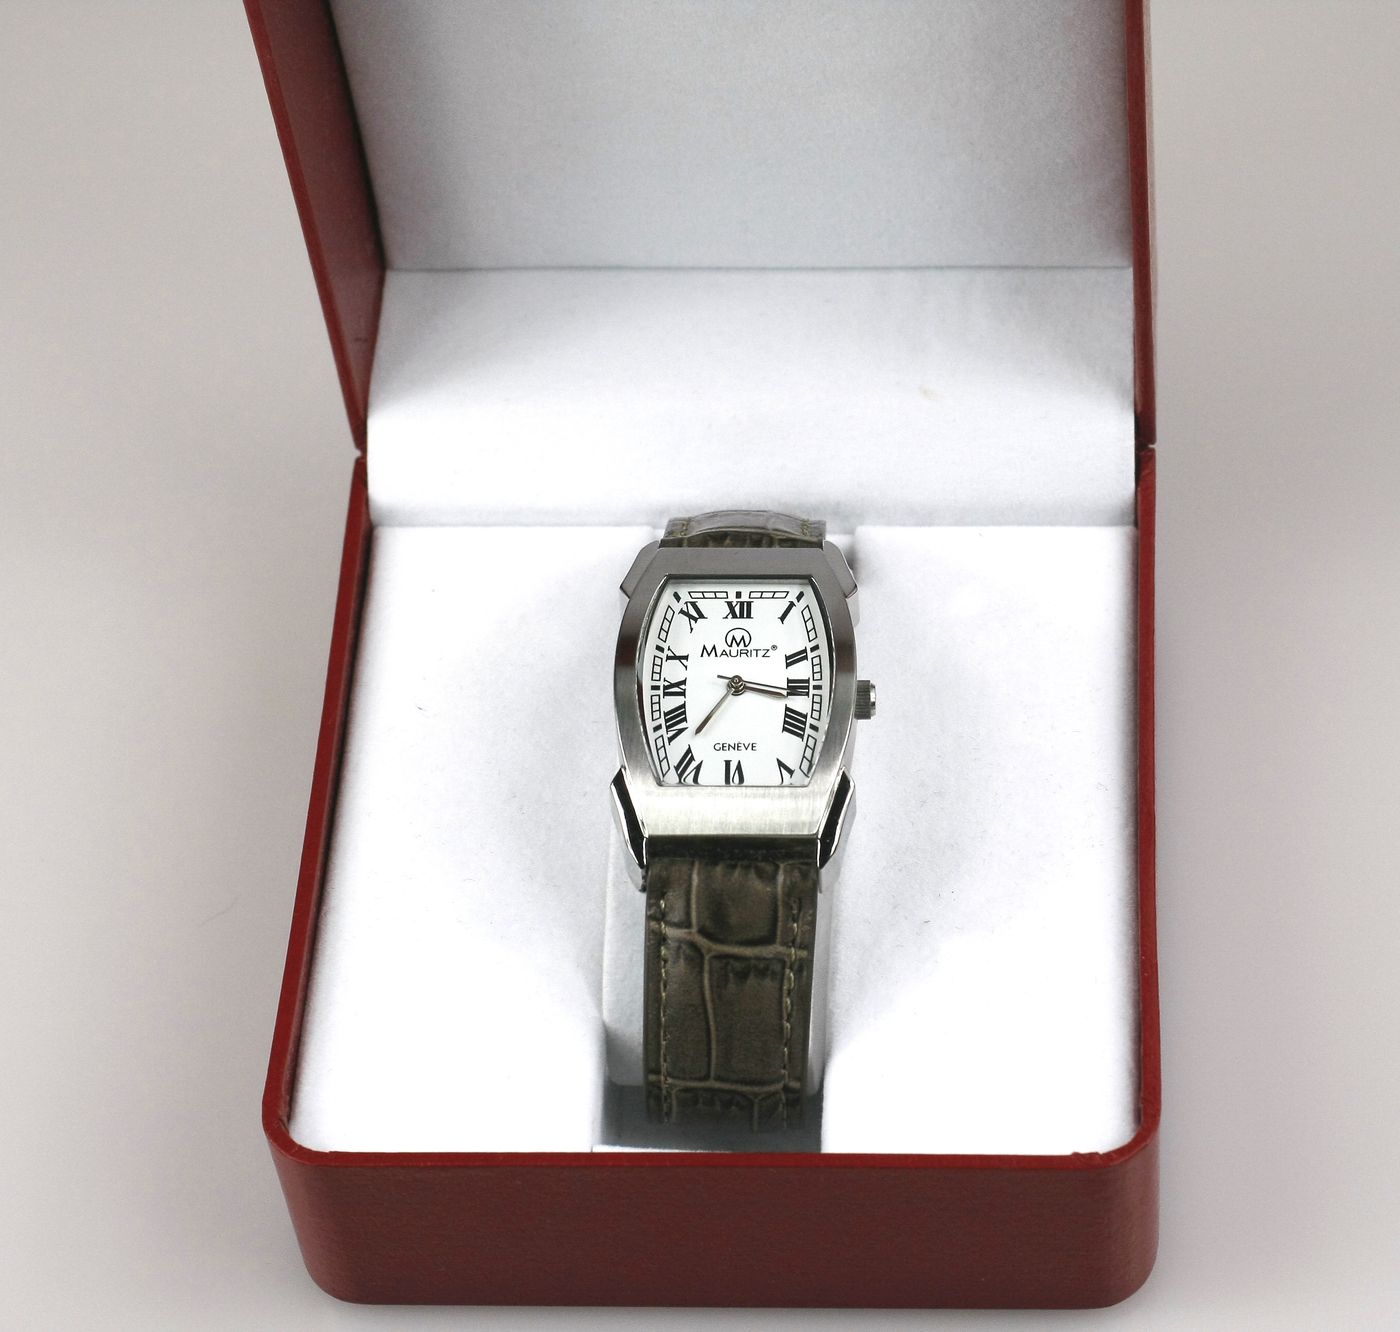 Pánské hodinky Mauritz Genéve RS0203, cartier